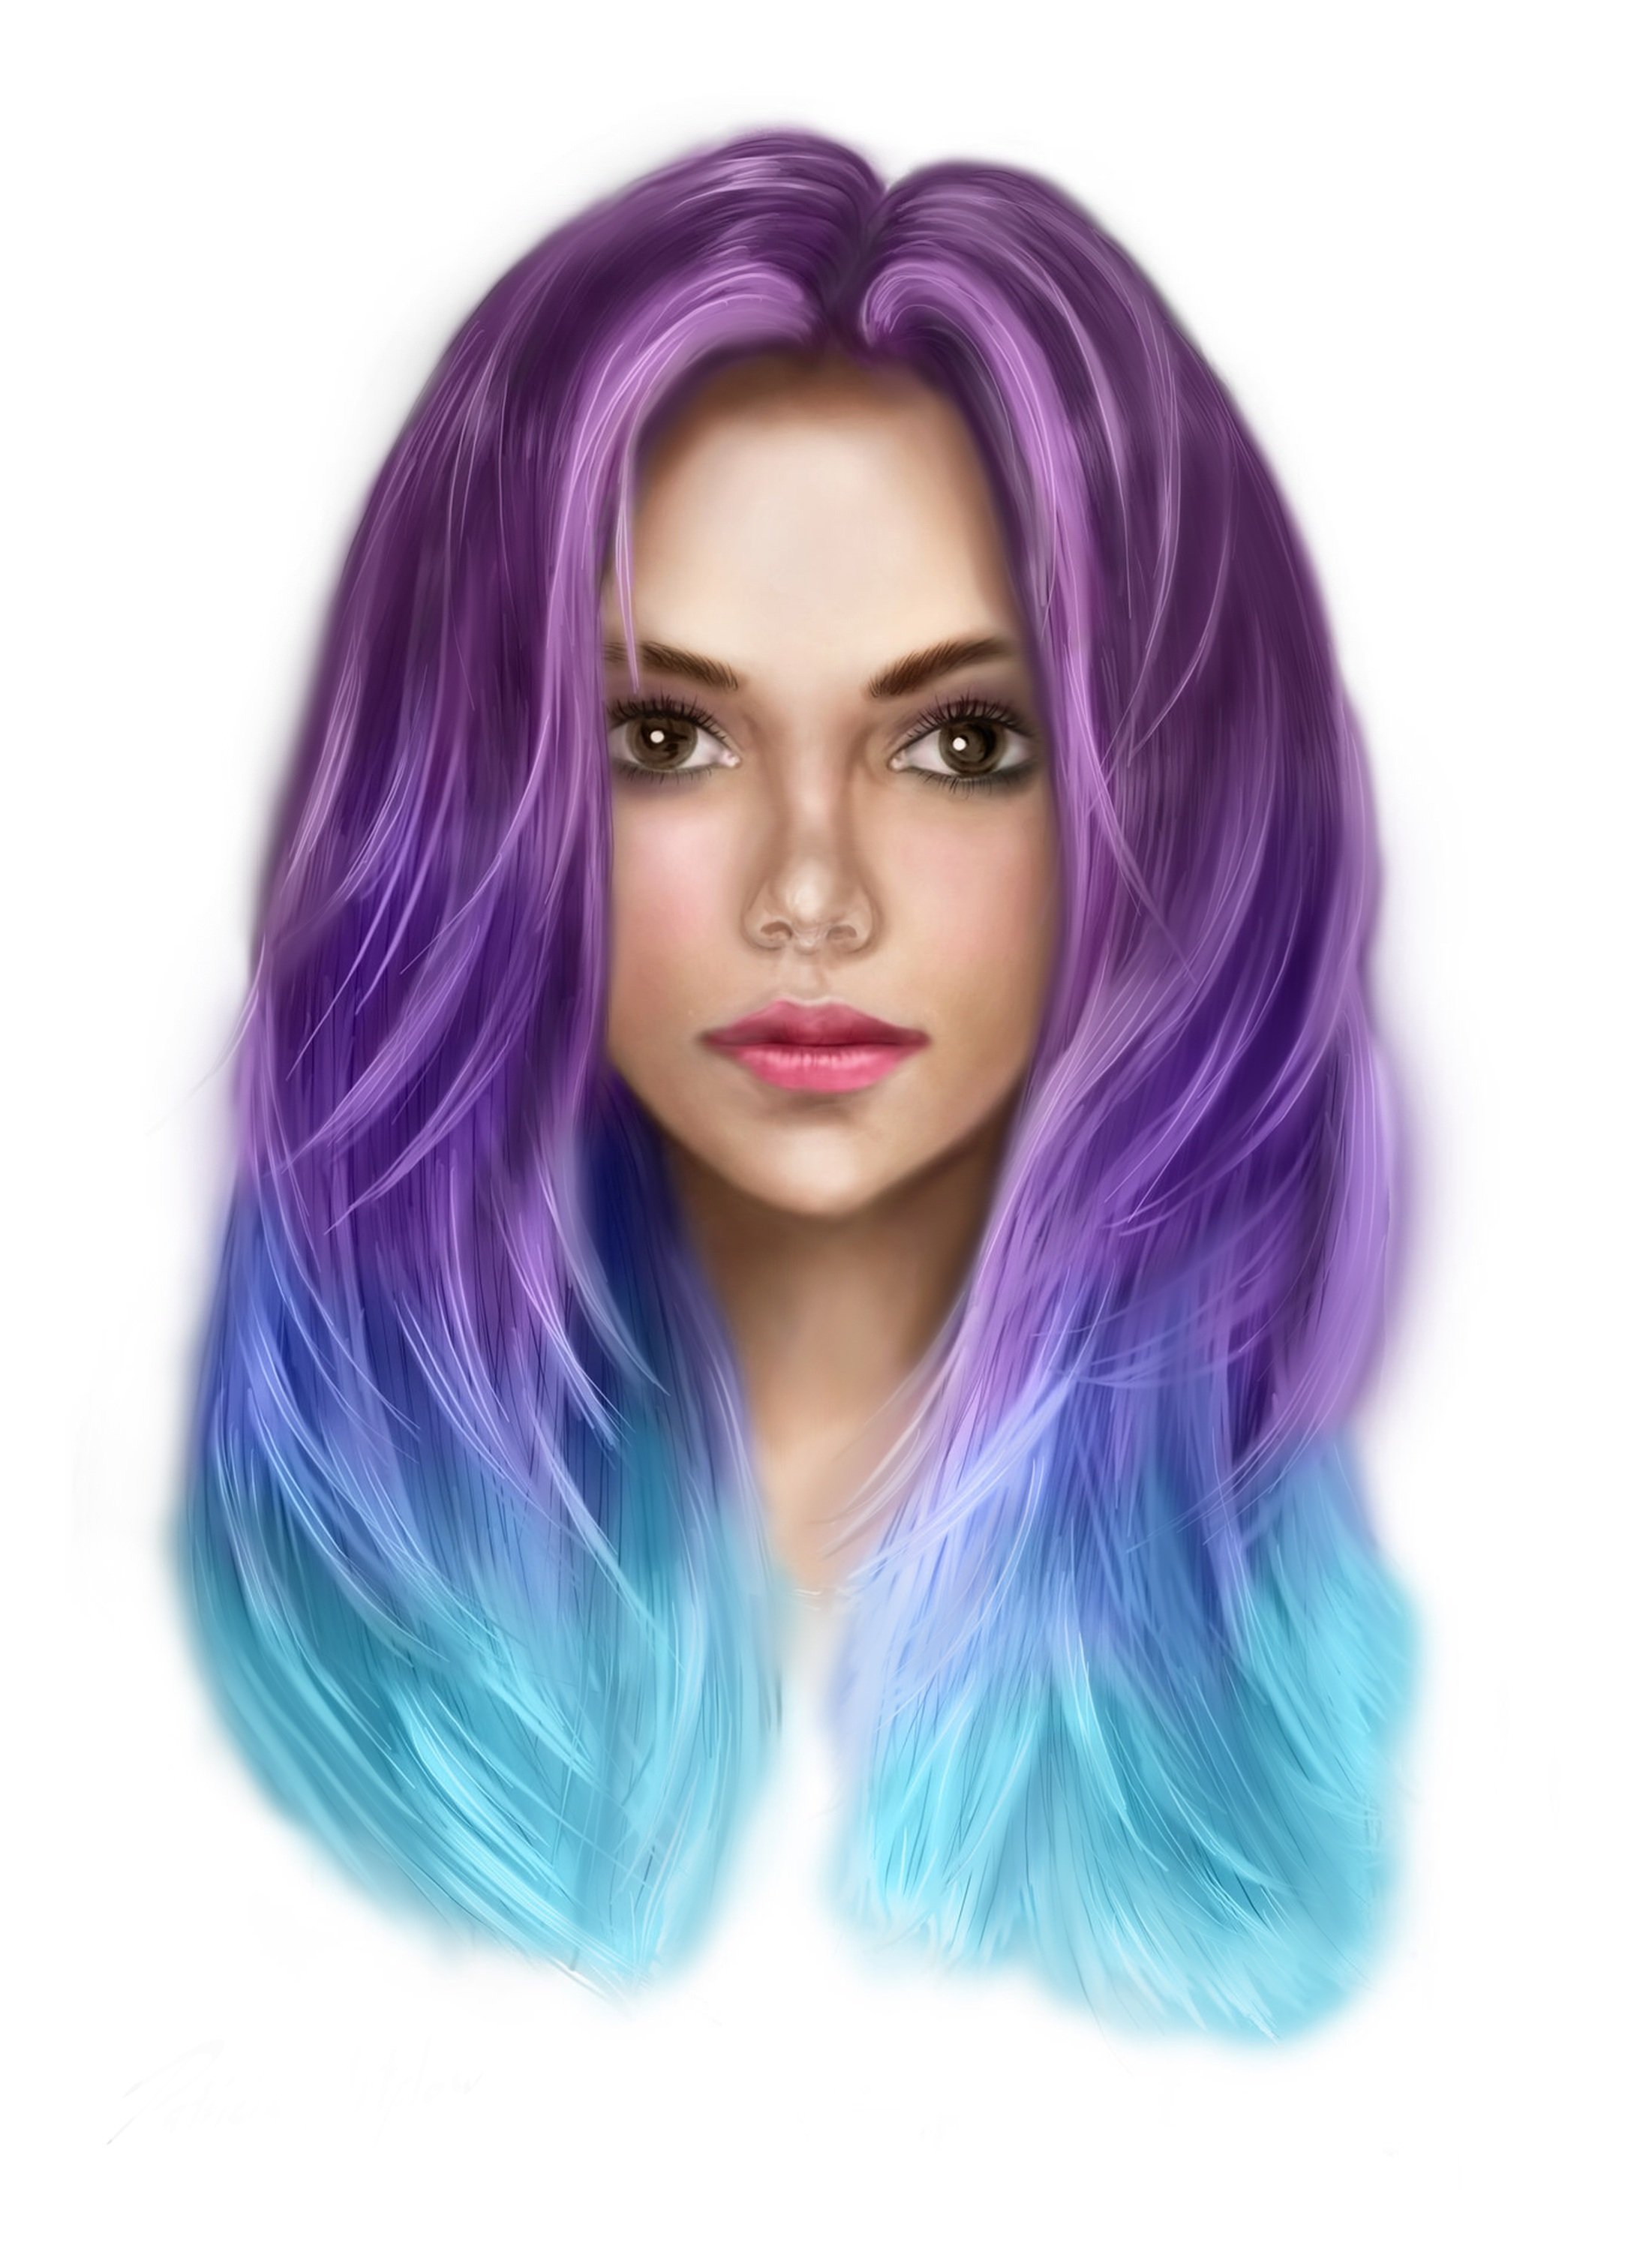 Цветная девочка. Девушка с фиолетовыми волосами. Девушка с сиреневыми волосами. Девушка с цветными волосами. Разноцветные волосы у девушек.